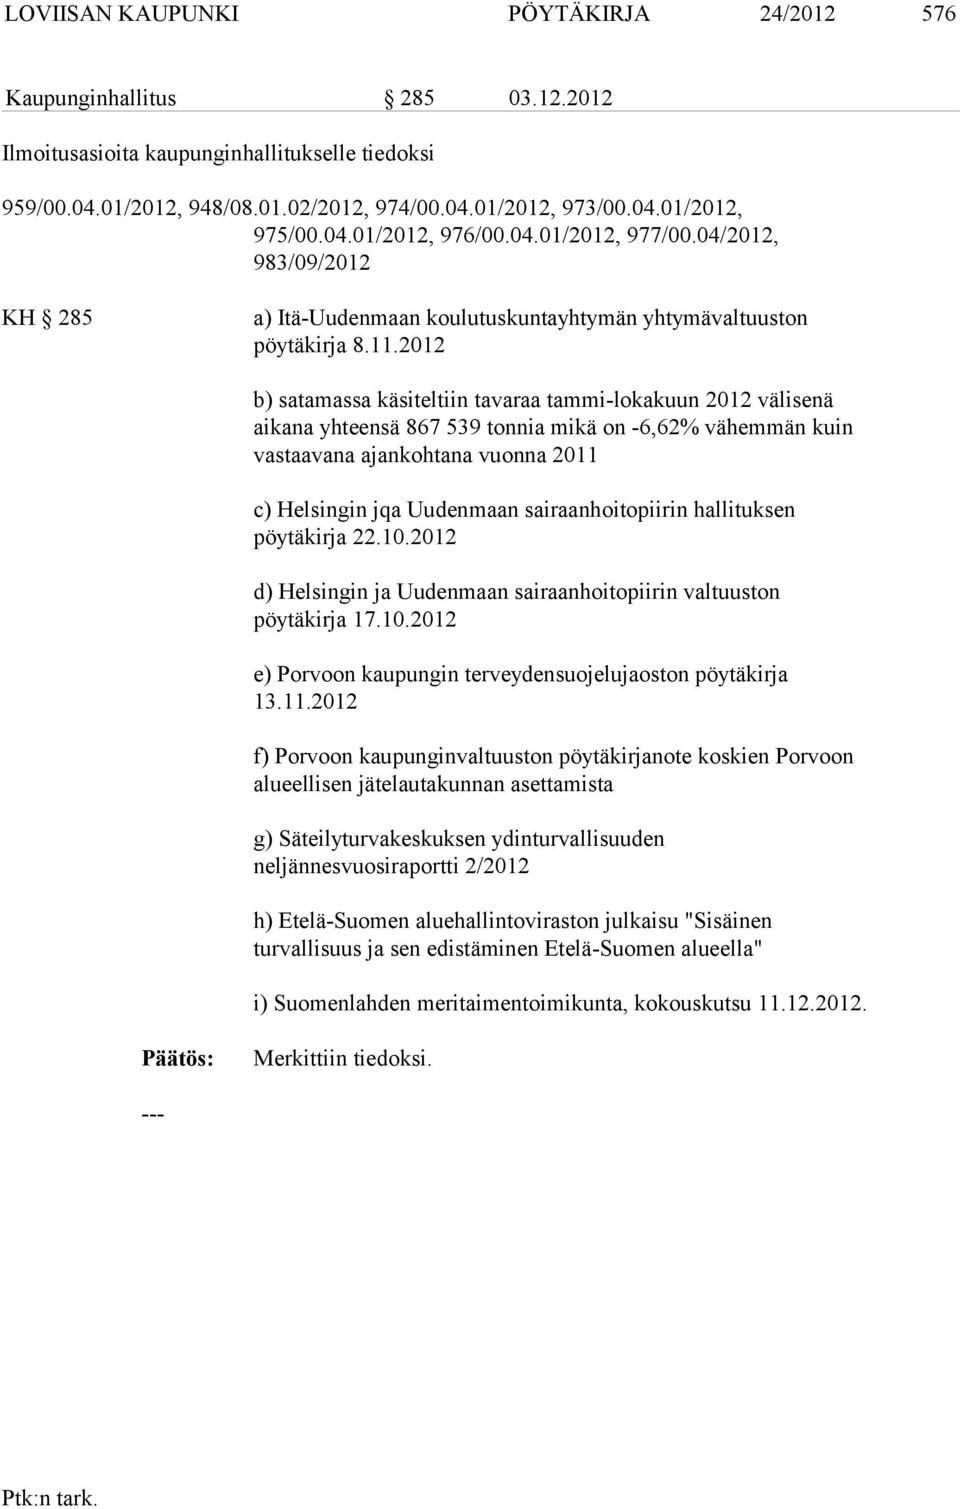 2012 b) satamassa käsiteltiin tavaraa tammi-lokakuun 2012 välisenä aikana yhteensä 867 539 tonnia mikä on -6,62% vähemmän kuin vastaavana ajankohtana vuonna 2011 c) Helsingin jqa Uudenmaan